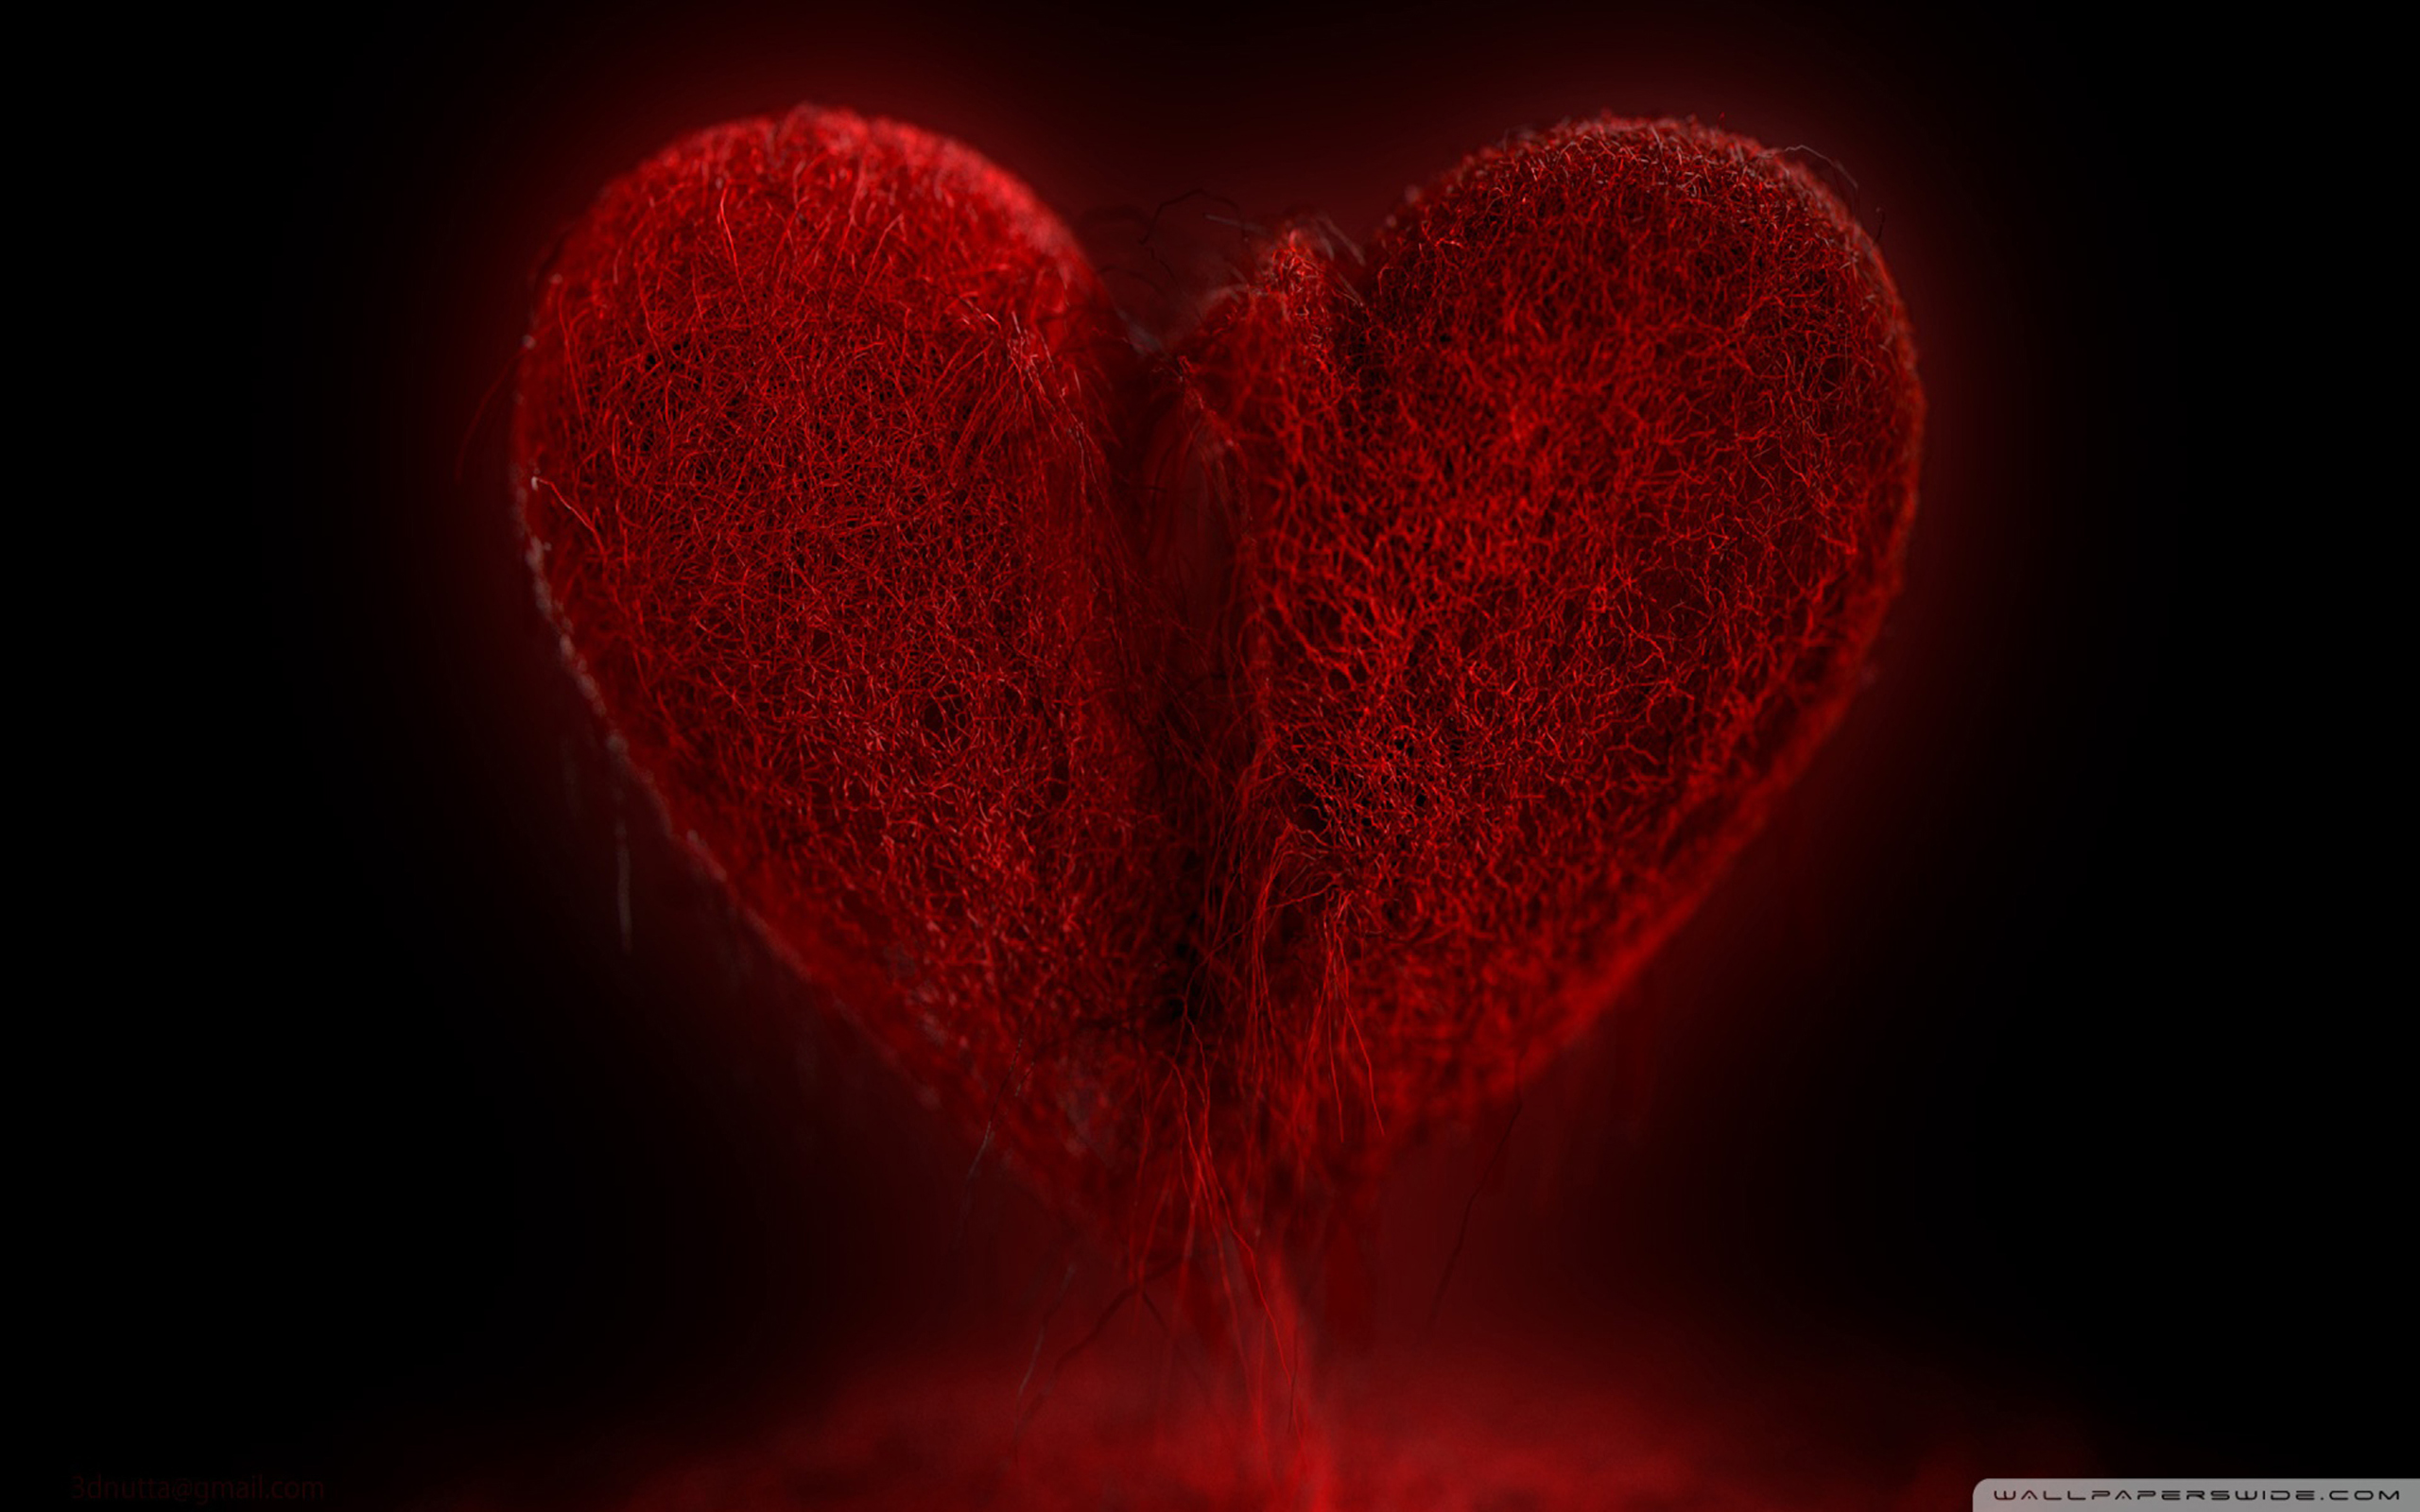 hd cuore spezzato,rosso,cuore,amore,san valentino,cuore